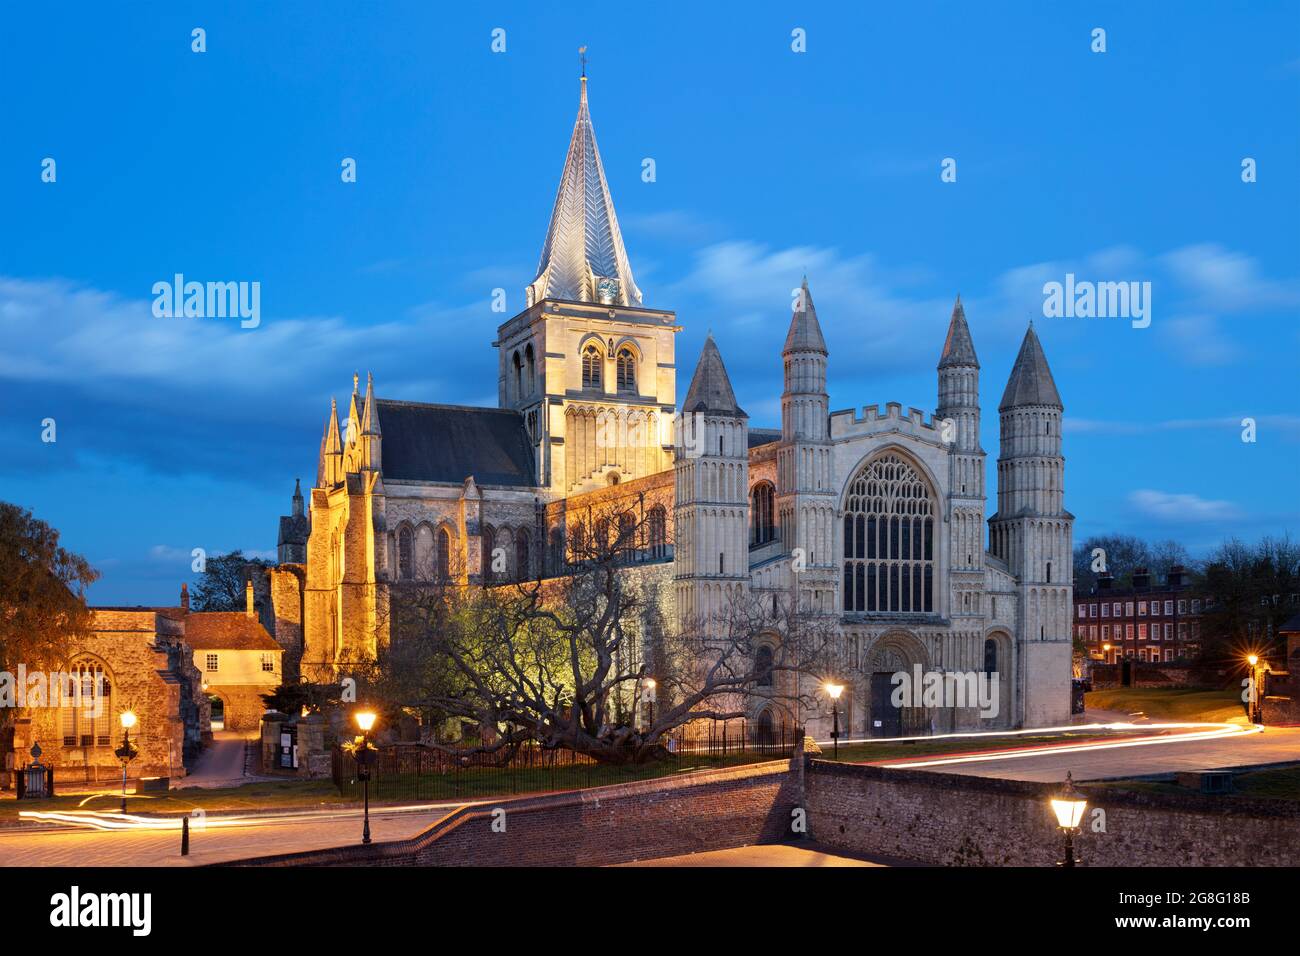 Il fronte ovest della cattedrale di Rochester costruita dai Normanni, illuminata di notte, Rochester, Kent, Inghilterra, Regno Unito, Europa Foto Stock